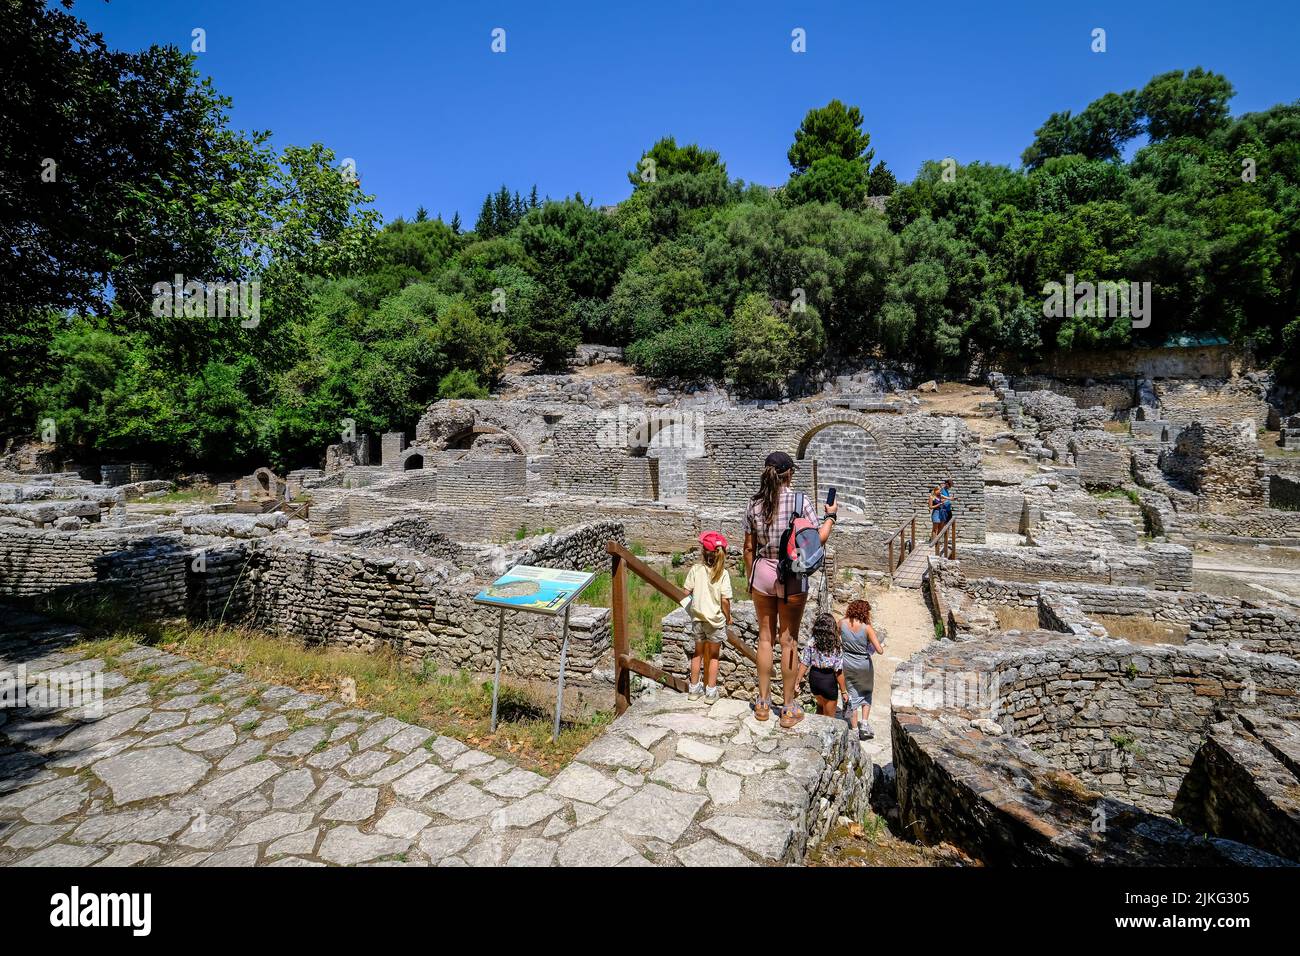 27.06.2022, Albania, Ksamil, Butrint - Los turistas visitan el anfiteatro en Butrint antiguo, el Templo de Asklepios y el teatro, Patrimonio de la Humanidad en ruinas de la ciudad Foto de stock